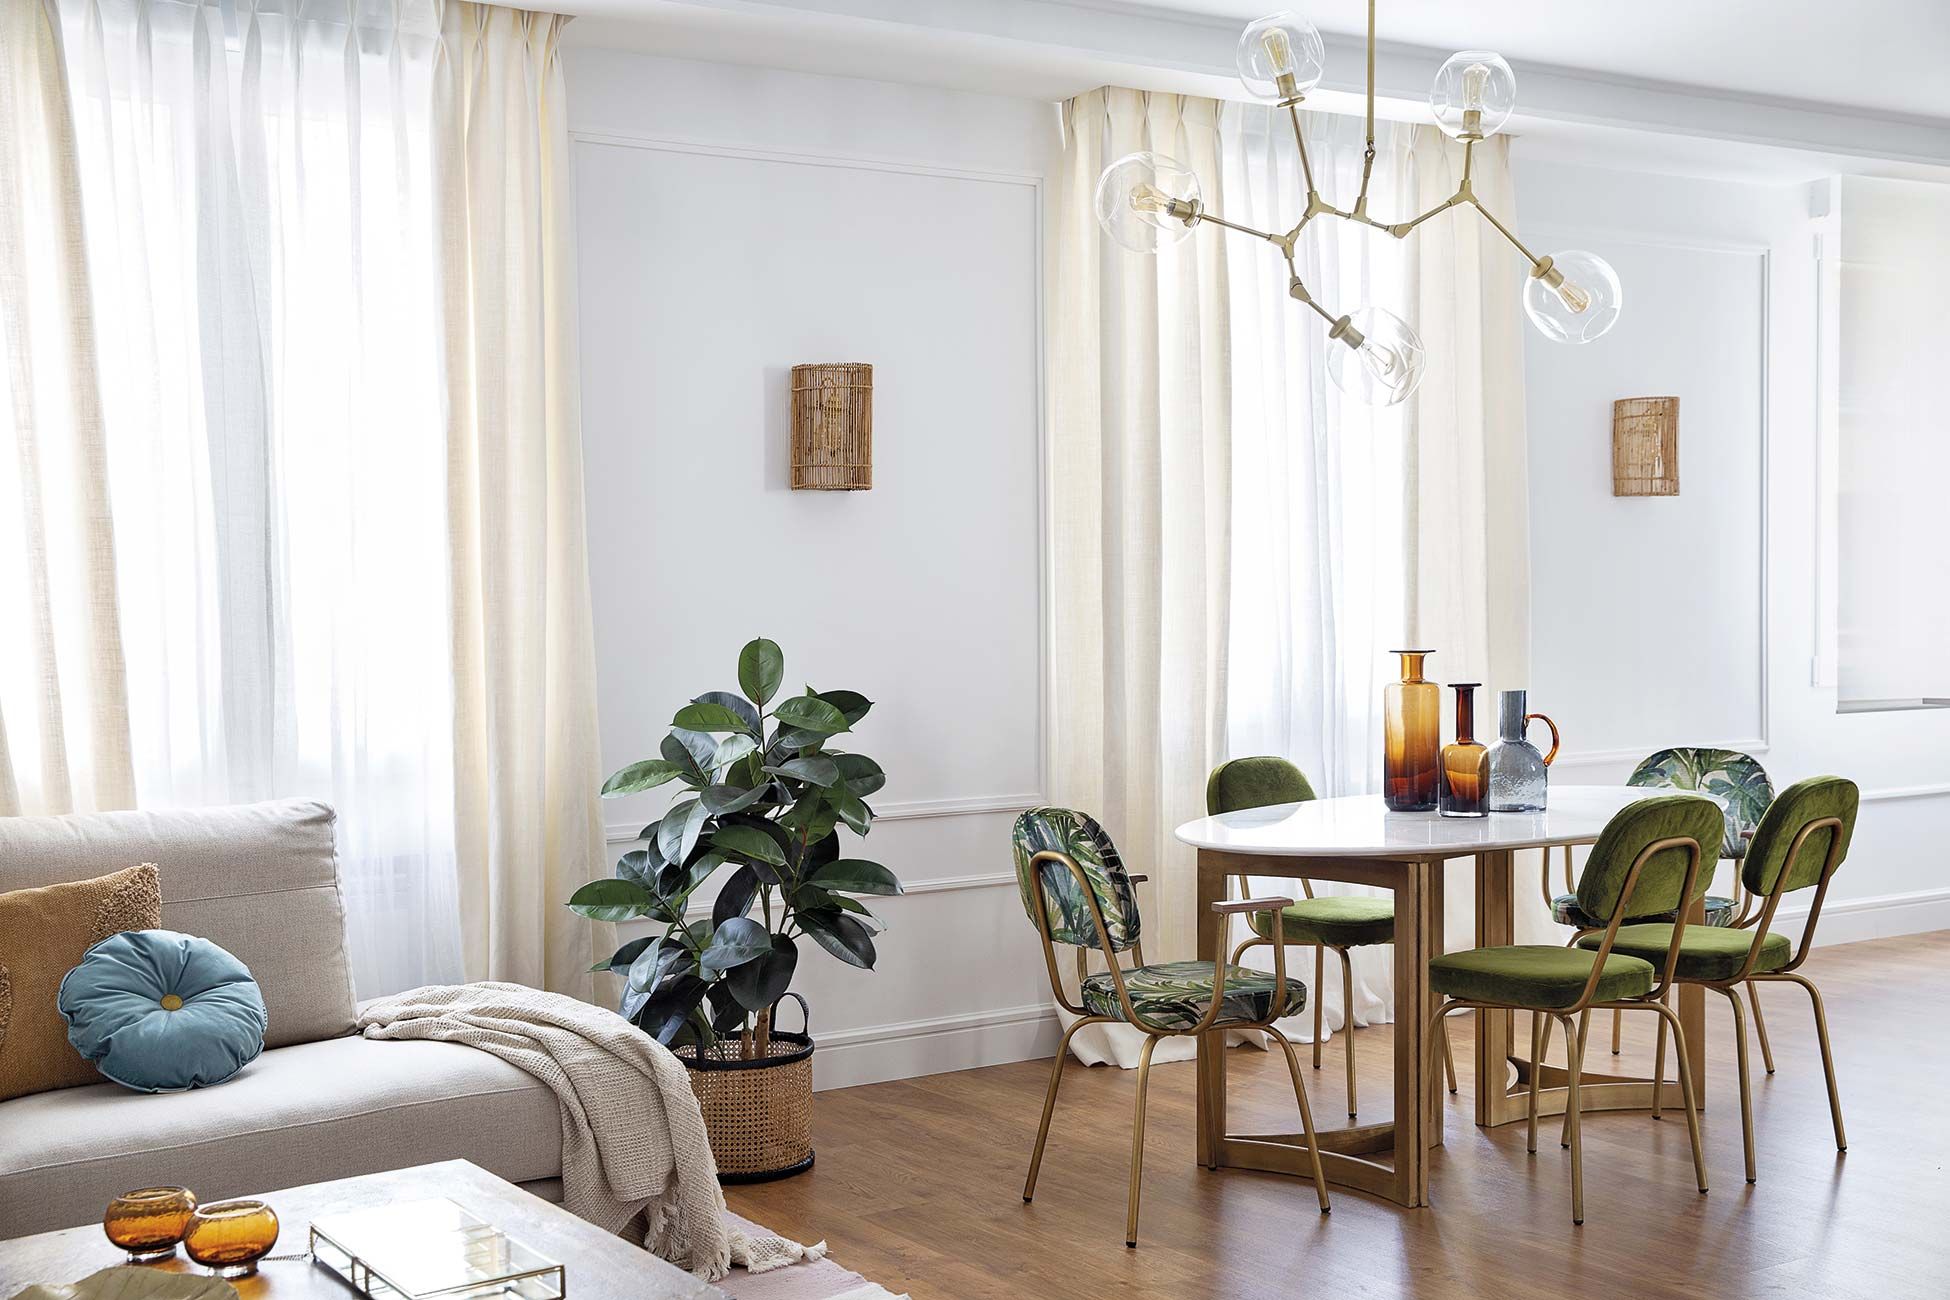 Quieres elevar tu nivel de decoración en tu hogar? ¡Te decimos cómo  lograrlo con luces!